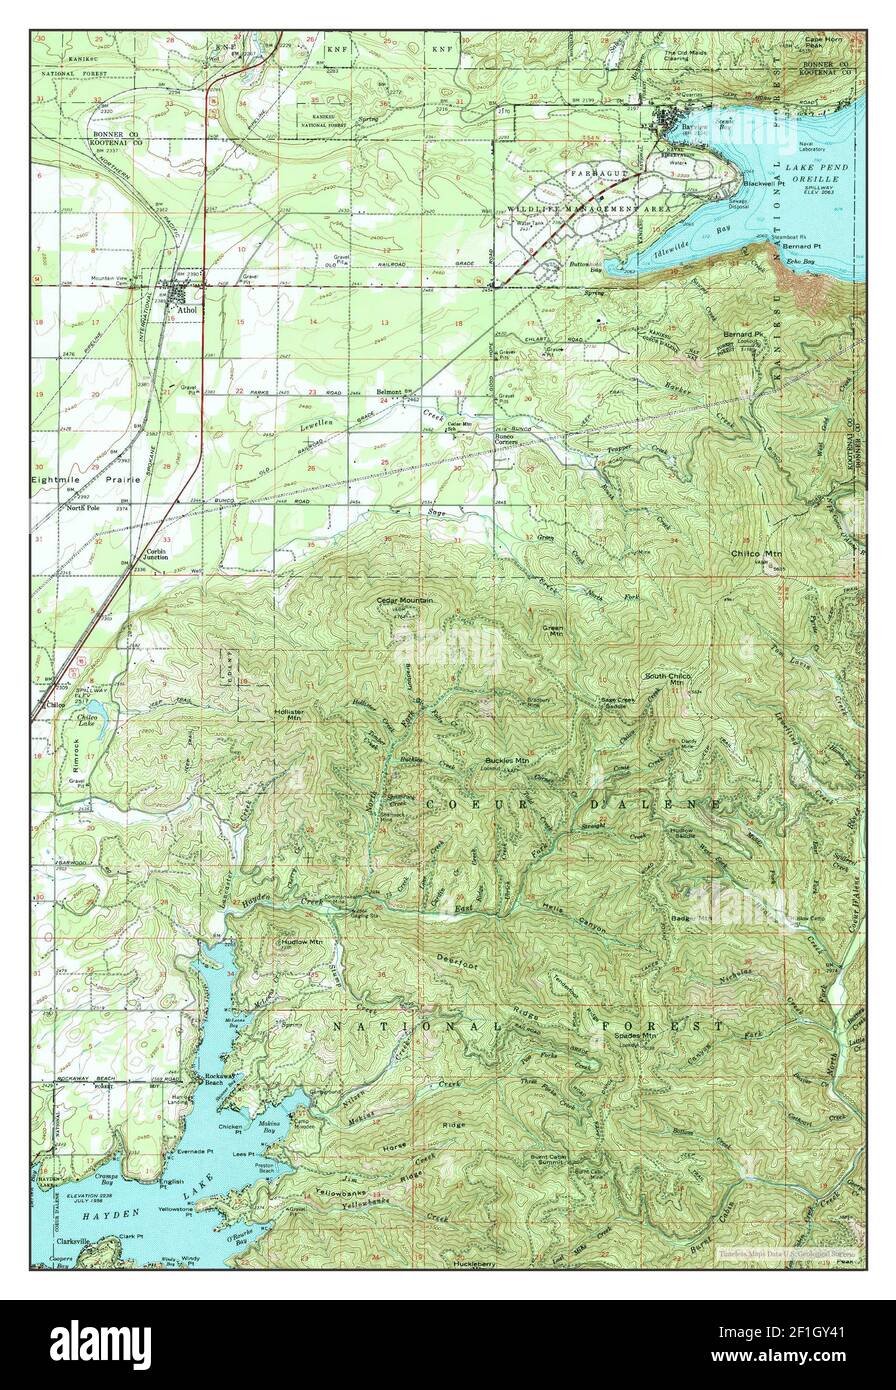 Athol, Idaho, map 1961, 1:62500, United States of America by Timeless Maps, data U.S. Geological Survey Stock Photo